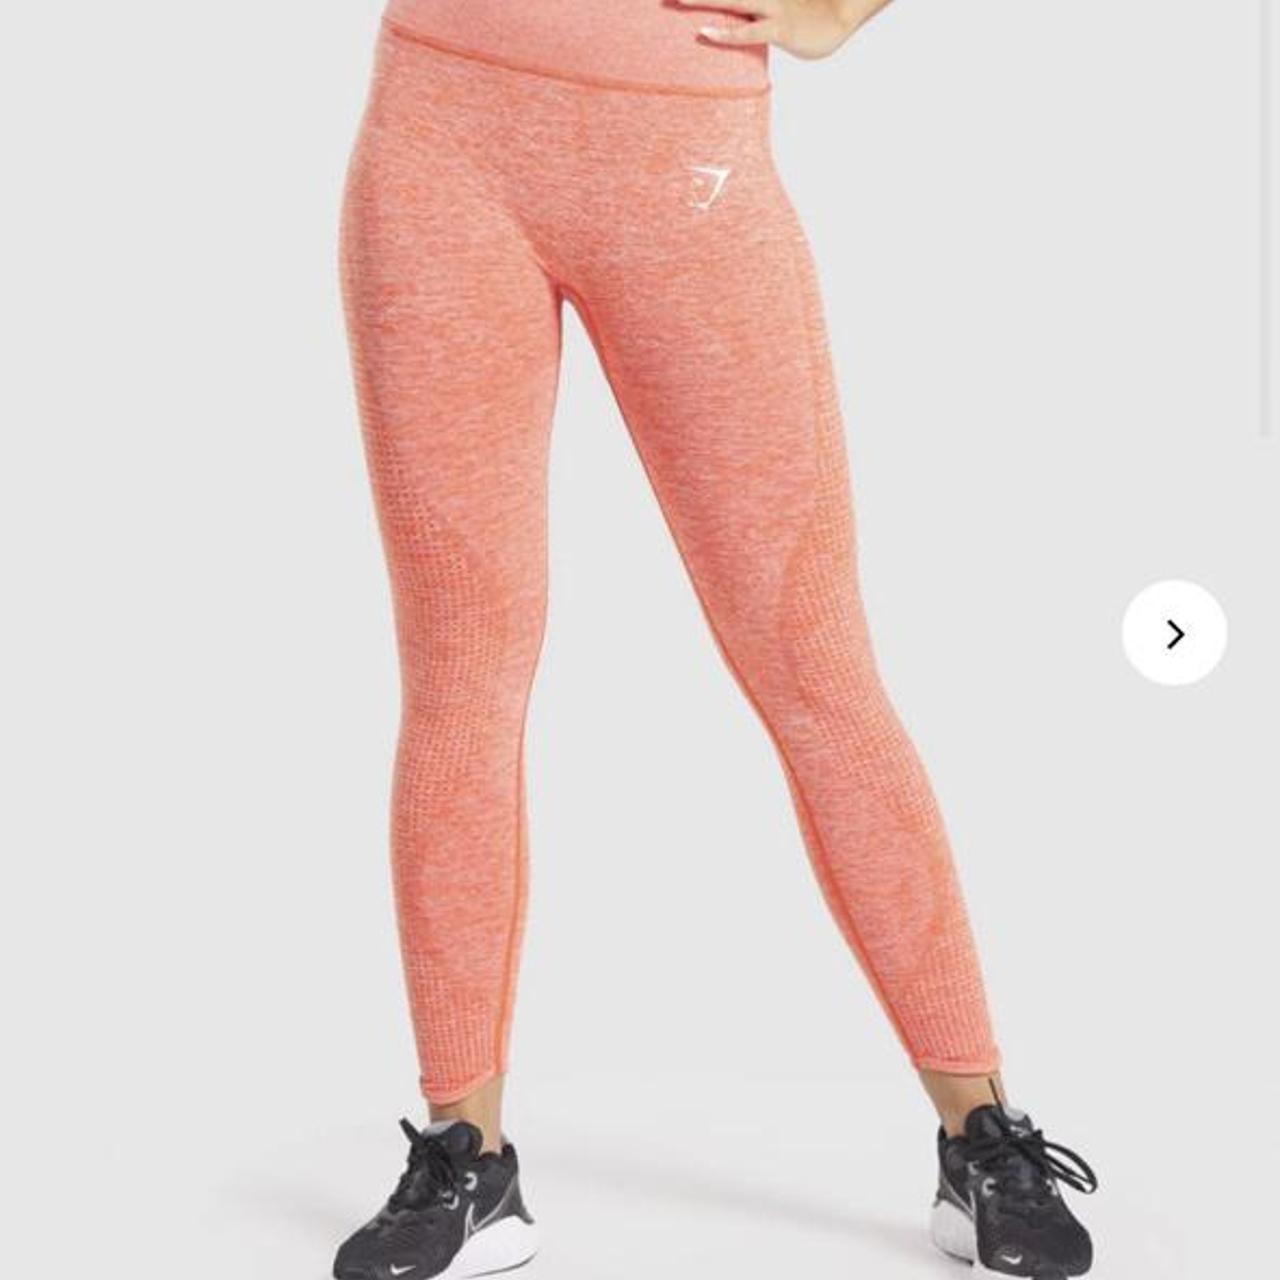 Gymshark vital seamless pink marl leggings Lovely - Depop